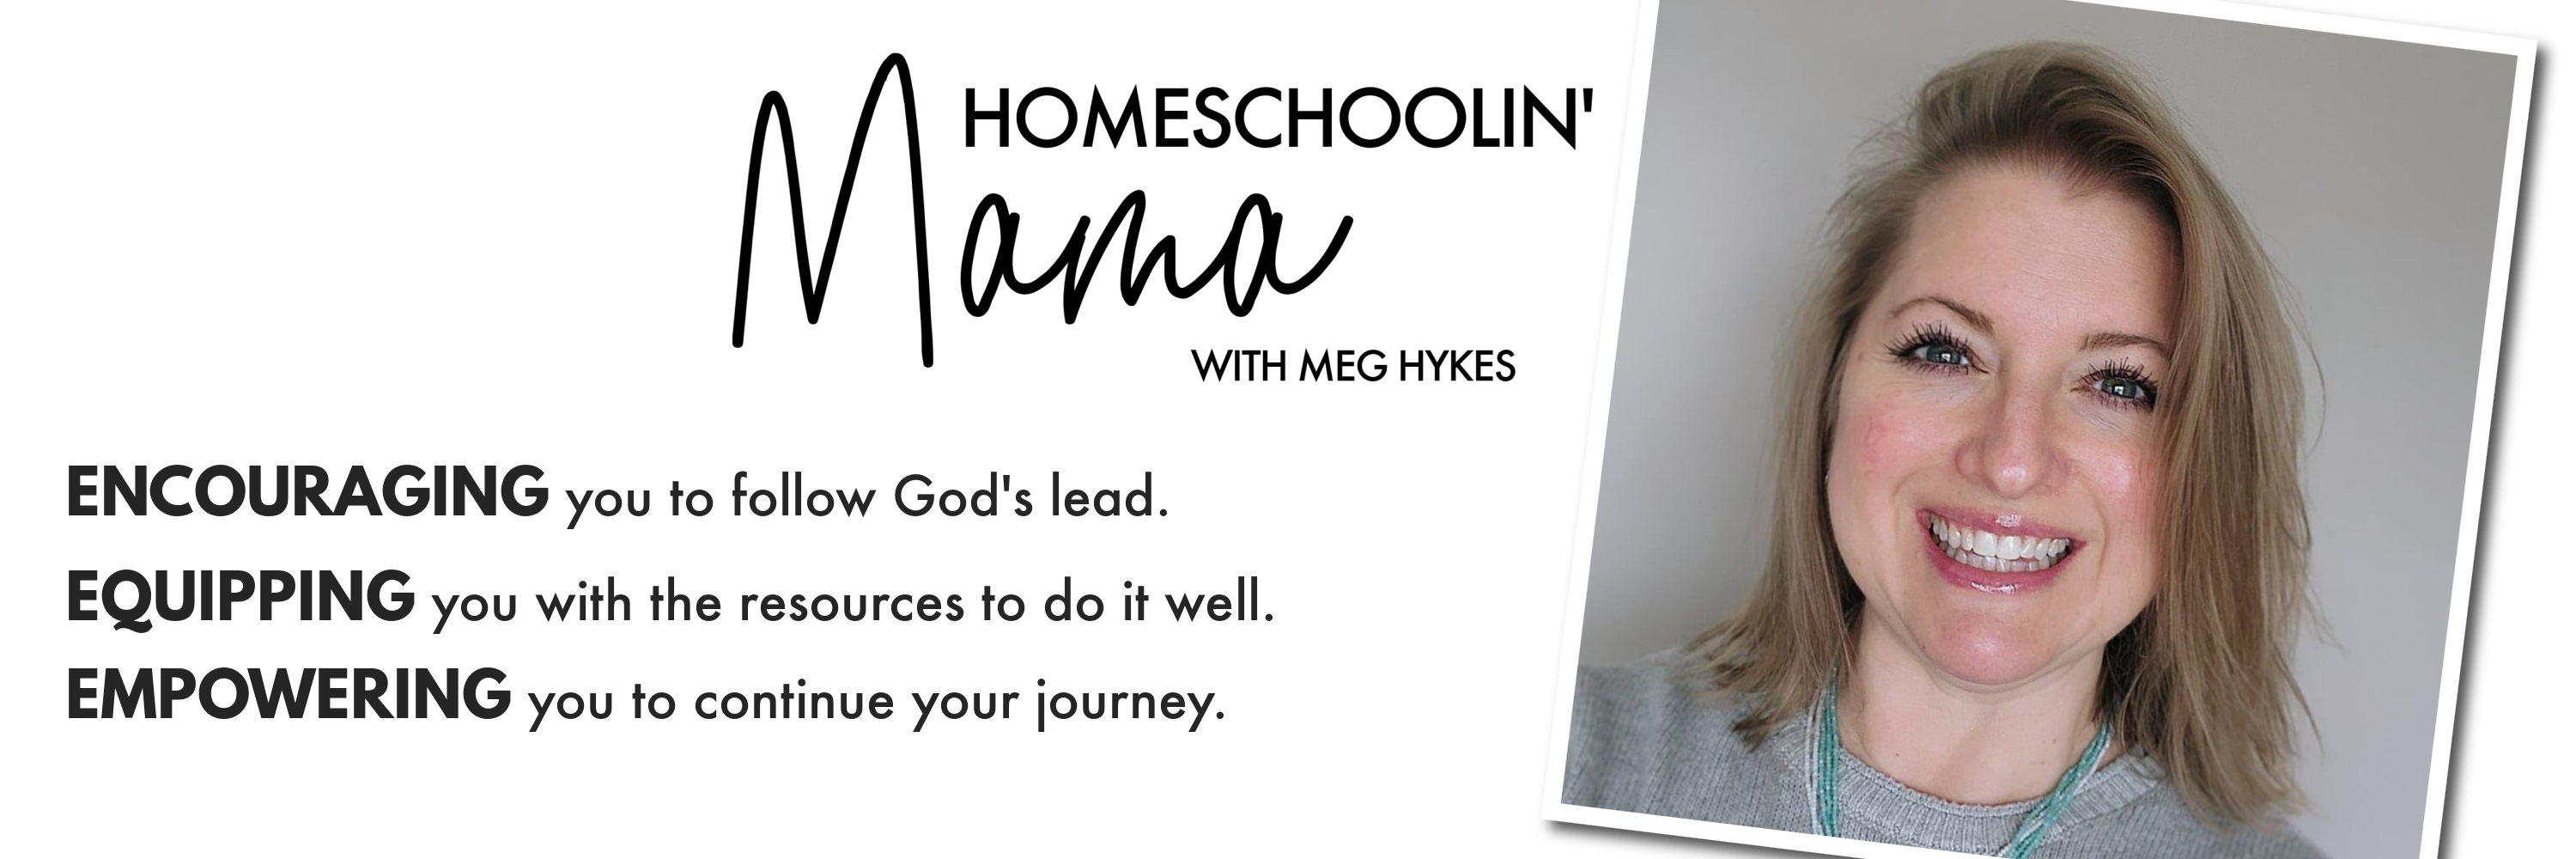 Homeschoolin' Mama with Meg Hykes